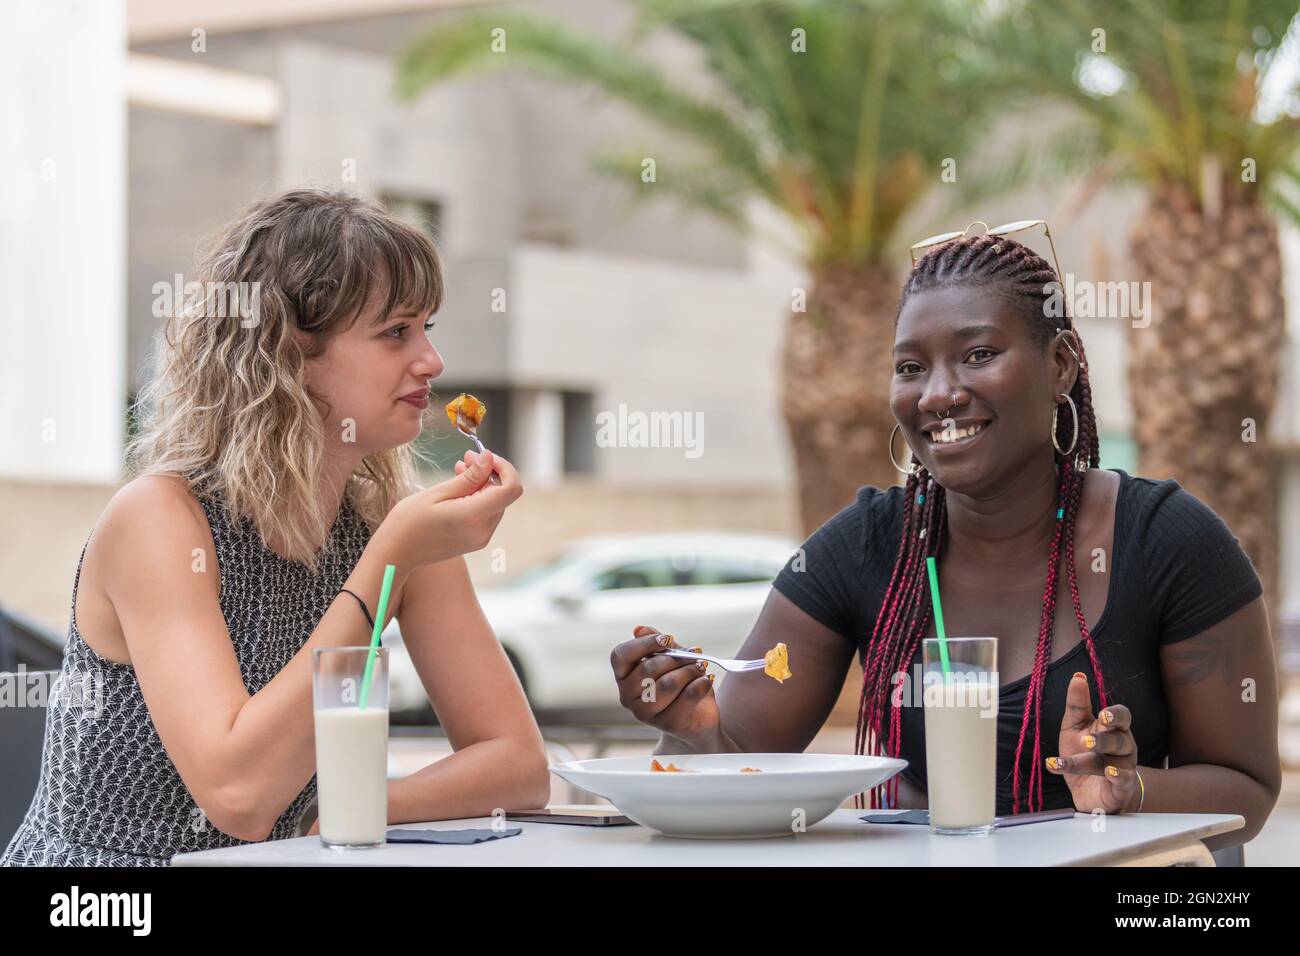 Zwei Frauen, die in einem Café im Freien essen und trinken, haben eine gute Zeit Stockfoto